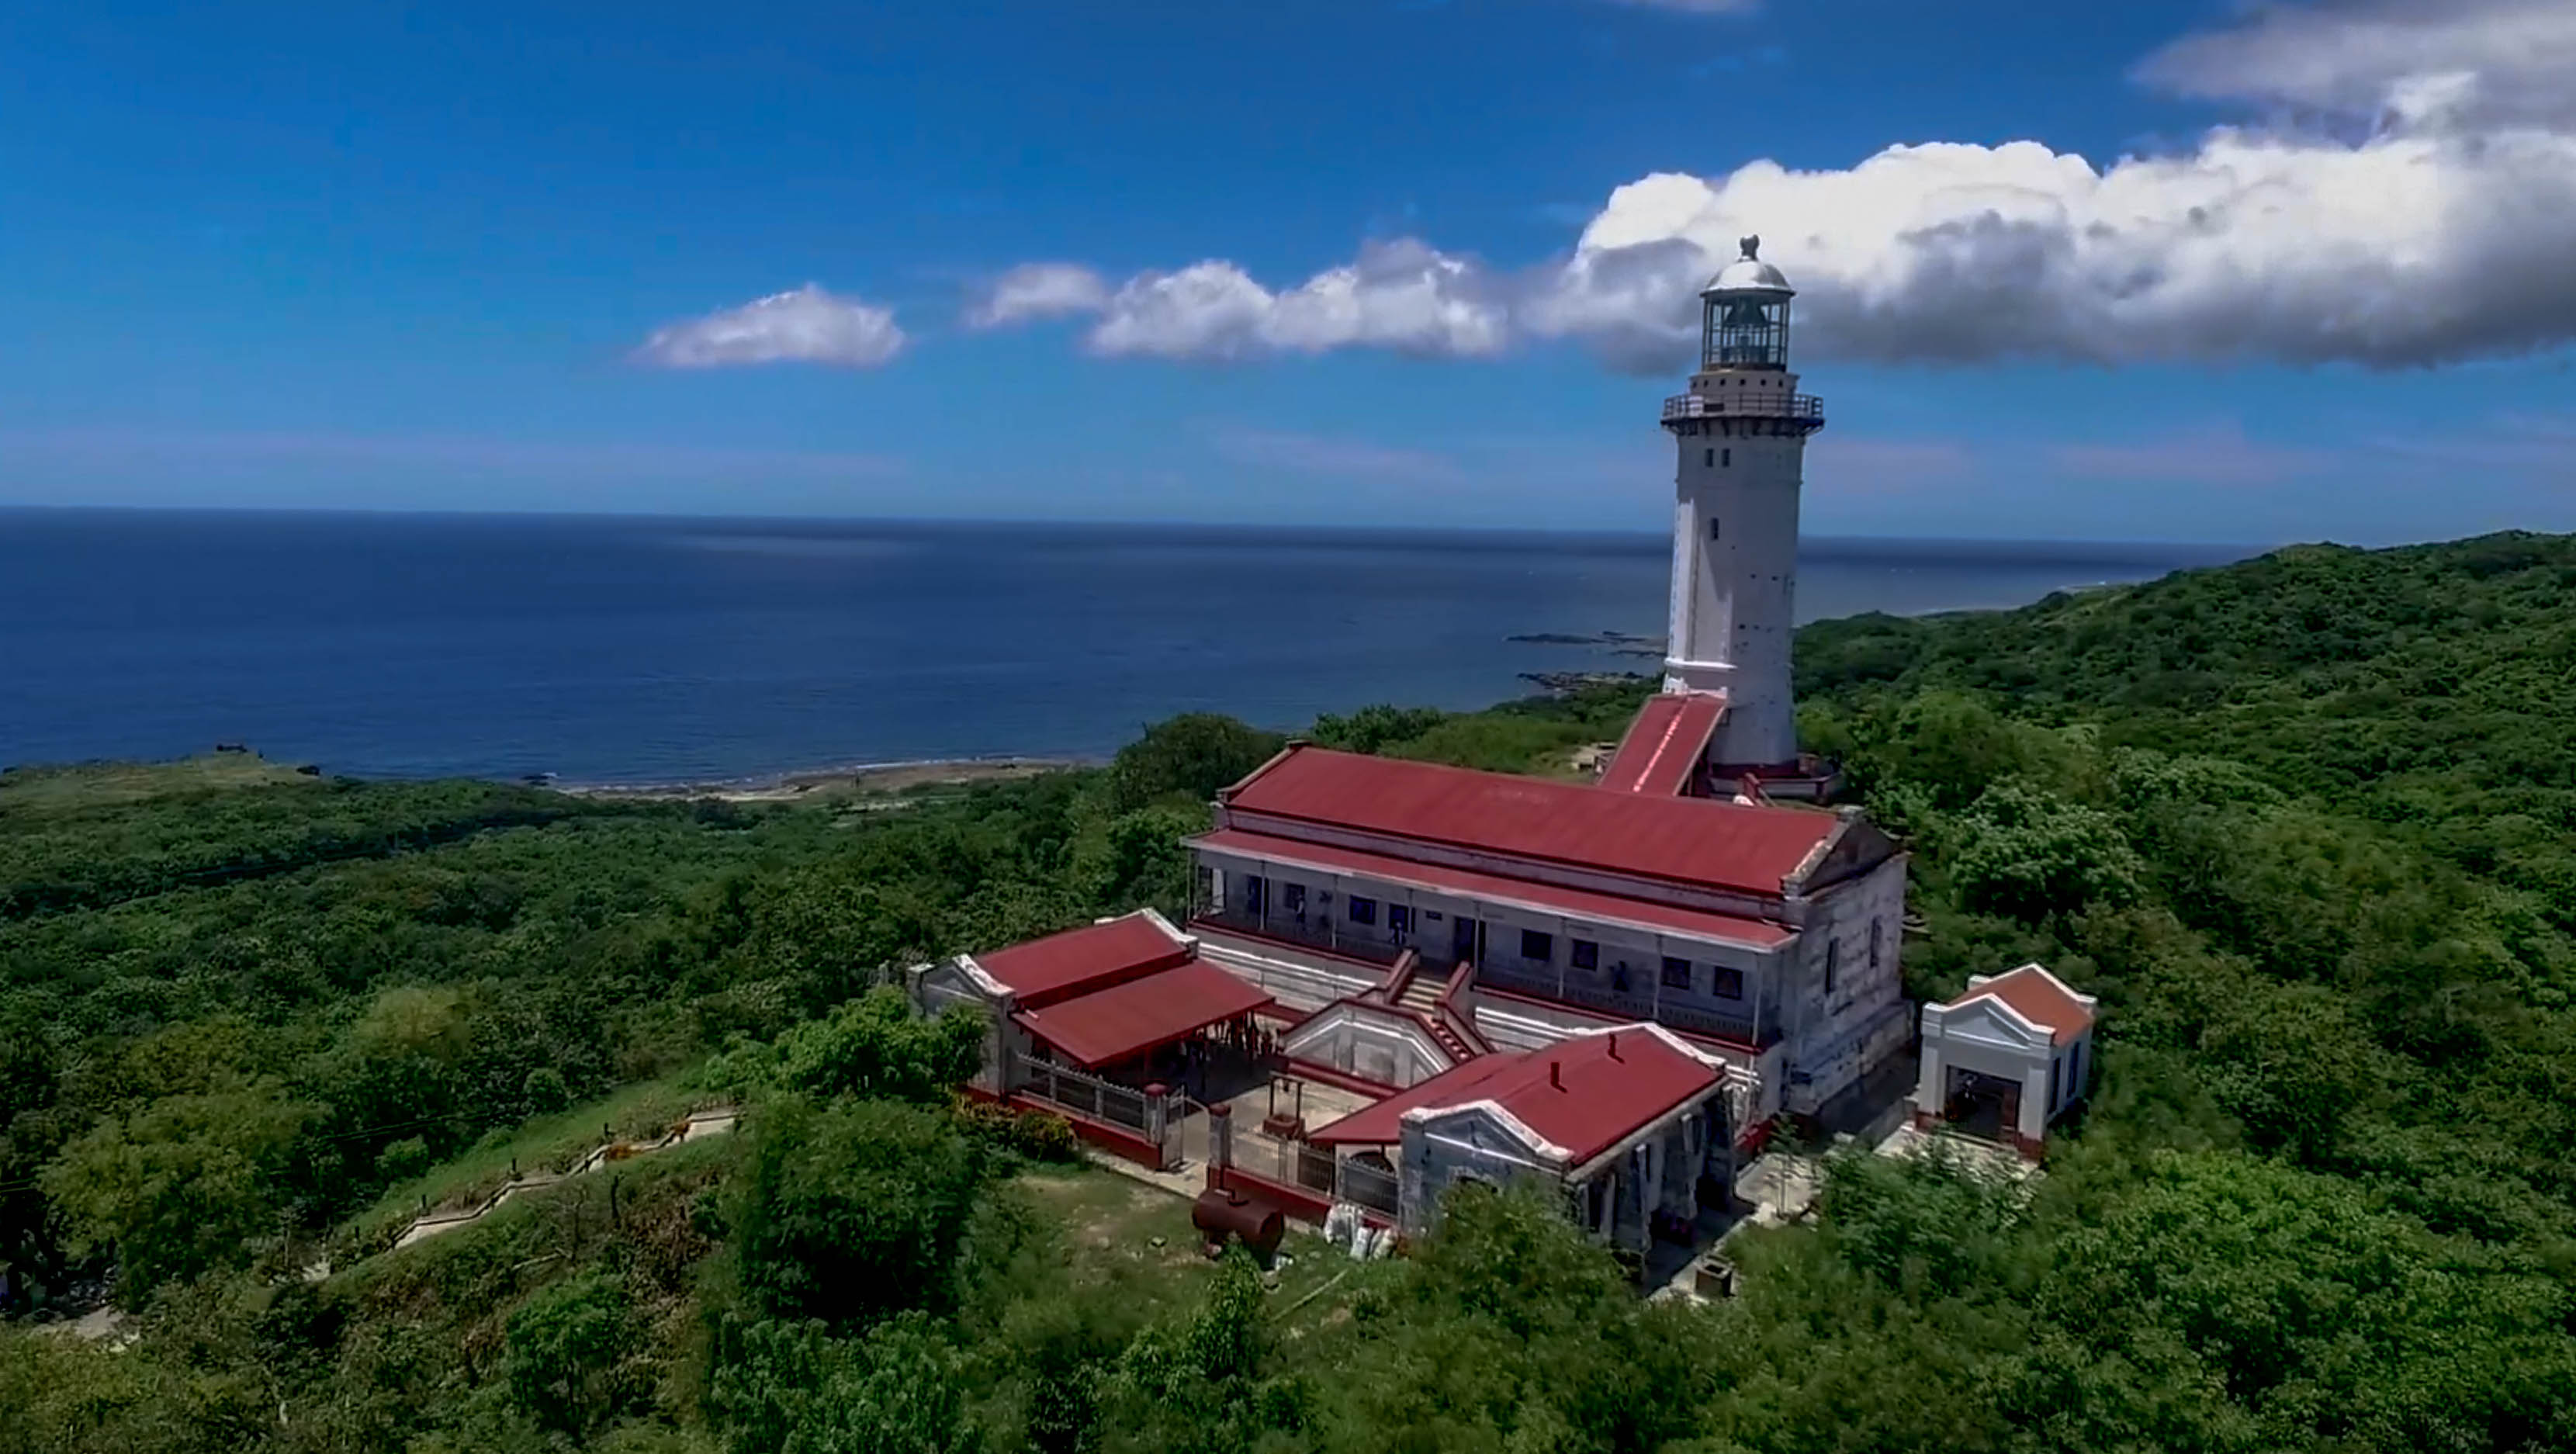 Cape bojeador lighthouse in burgos ilocos norte philippines